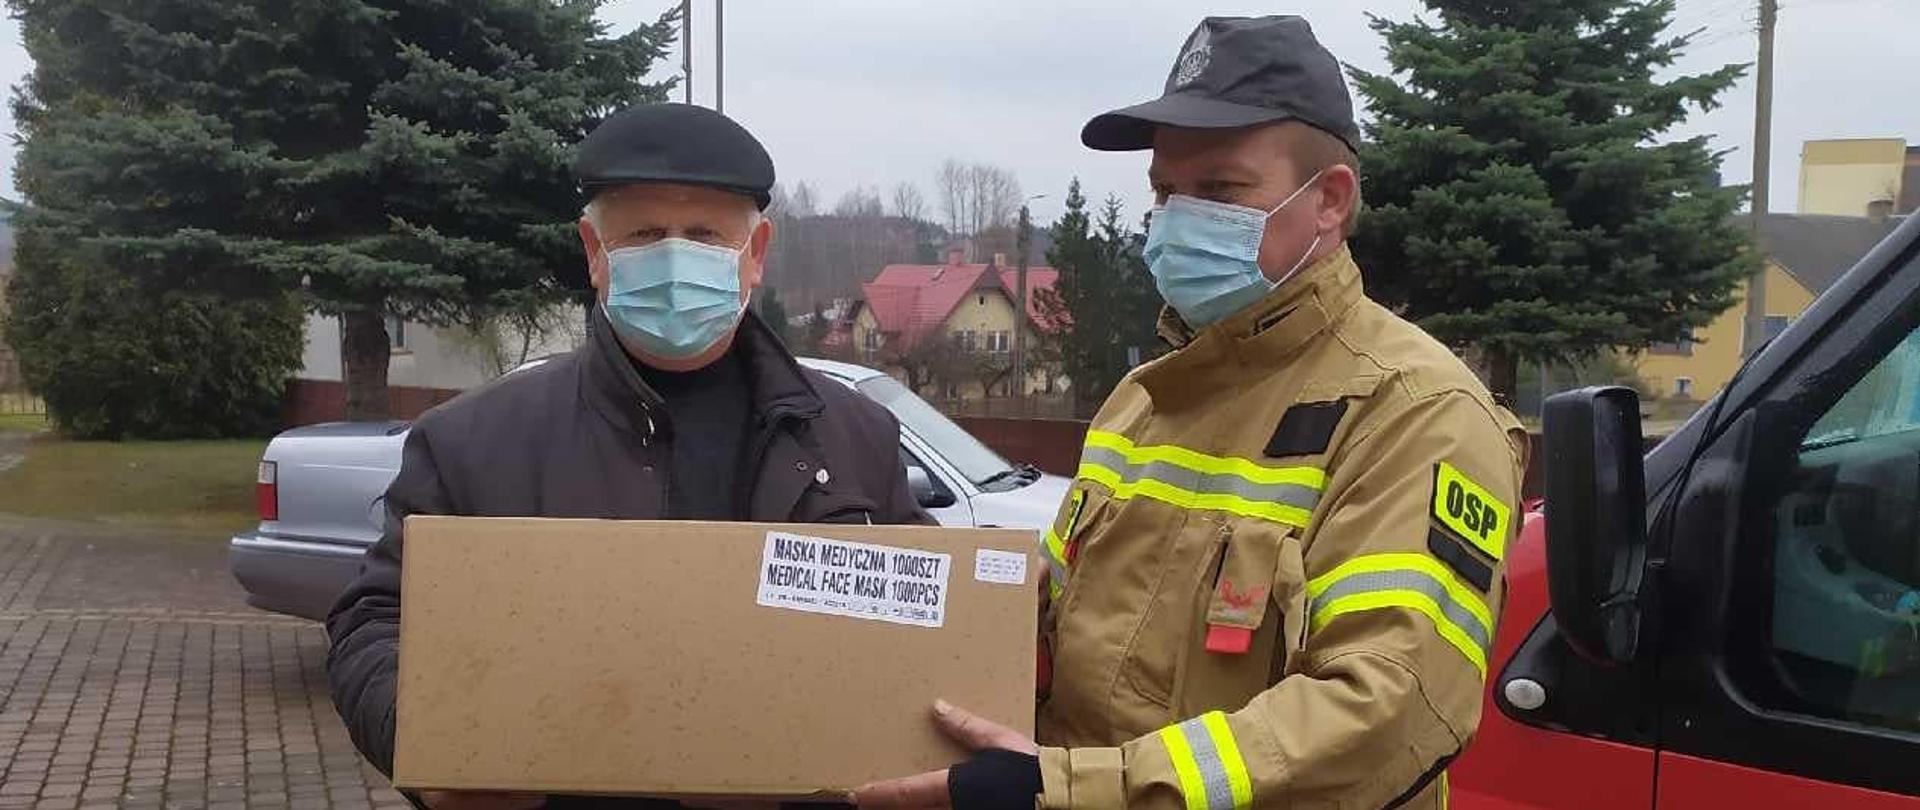 Ochotnik przekazujący maseczki proboszczowi parafii na tle samochodu pożarniczego i samochodu osobowego.